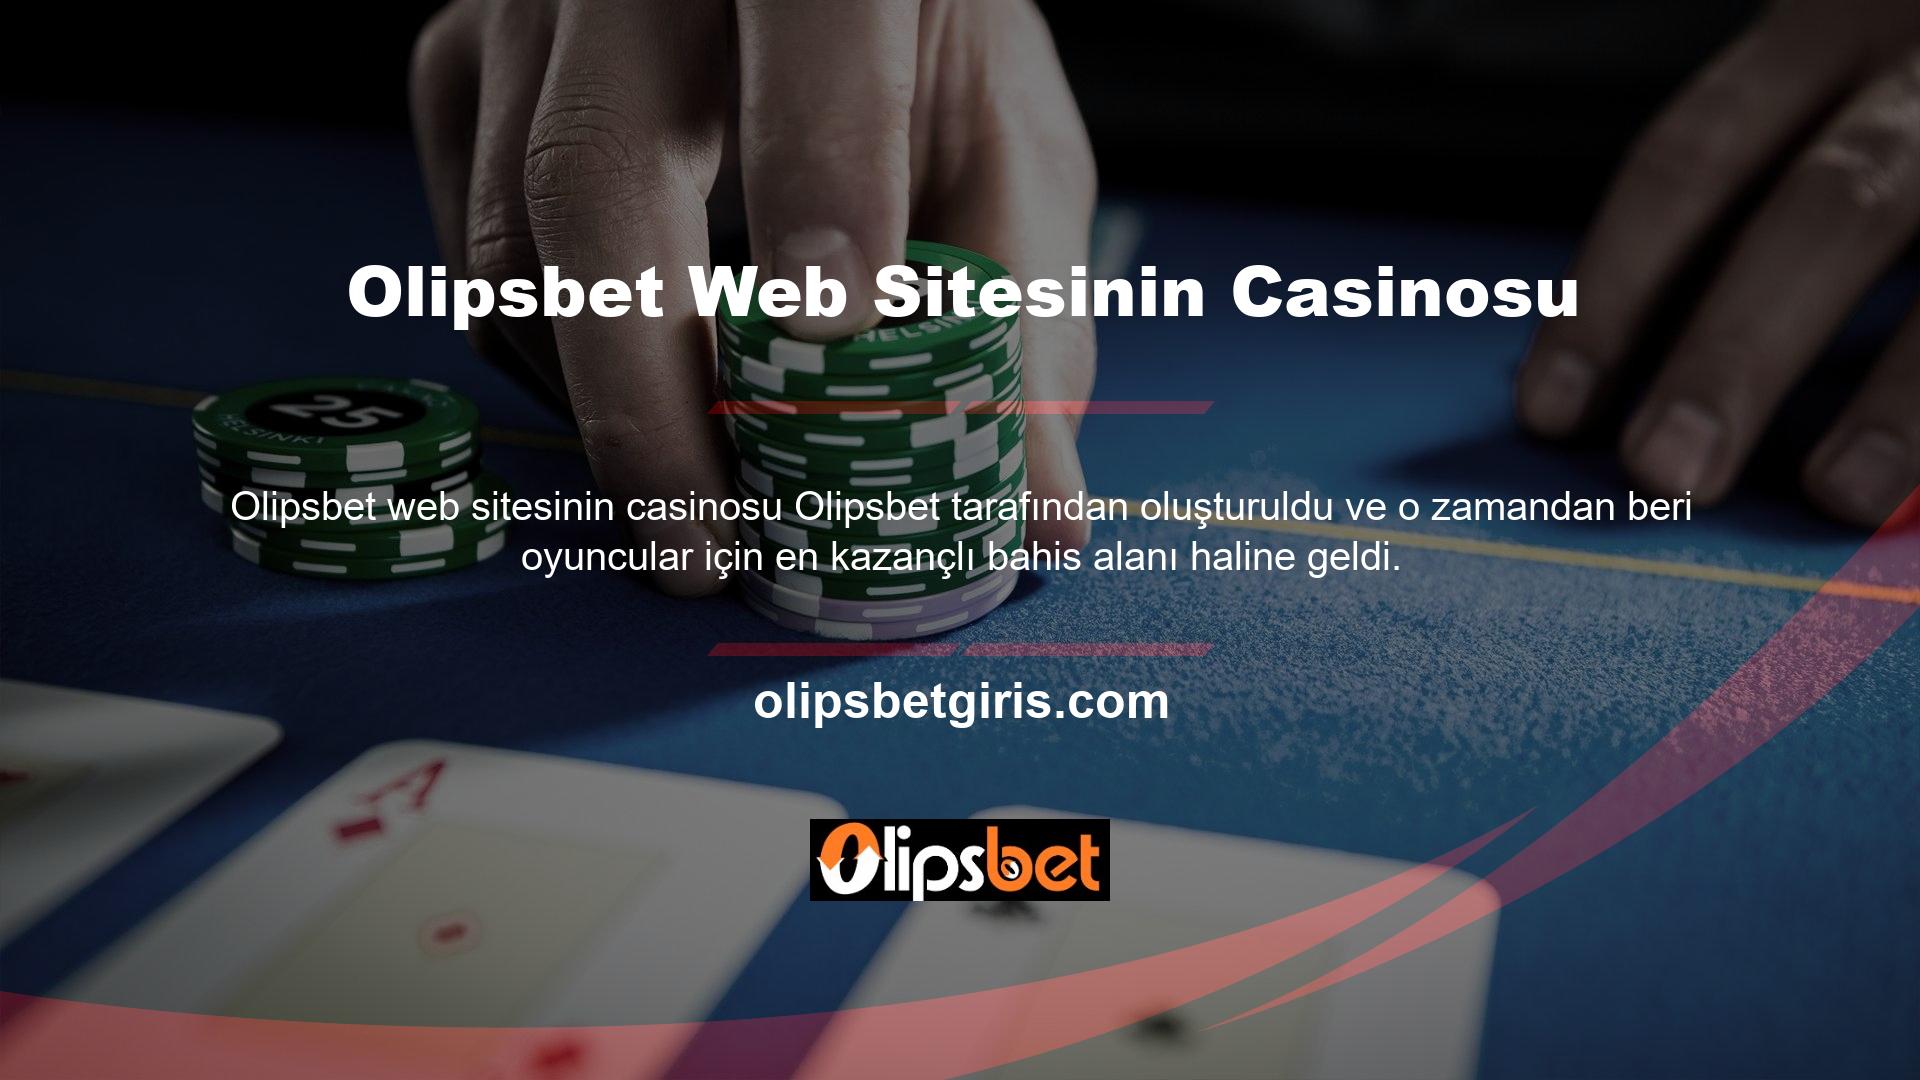 Olipsbet Casino'nun slot makineleri karmaşık tasarımlara sahiptir ve mümkün olan en iyi bahis deneyimini sunacağından emin olabilirsiniz